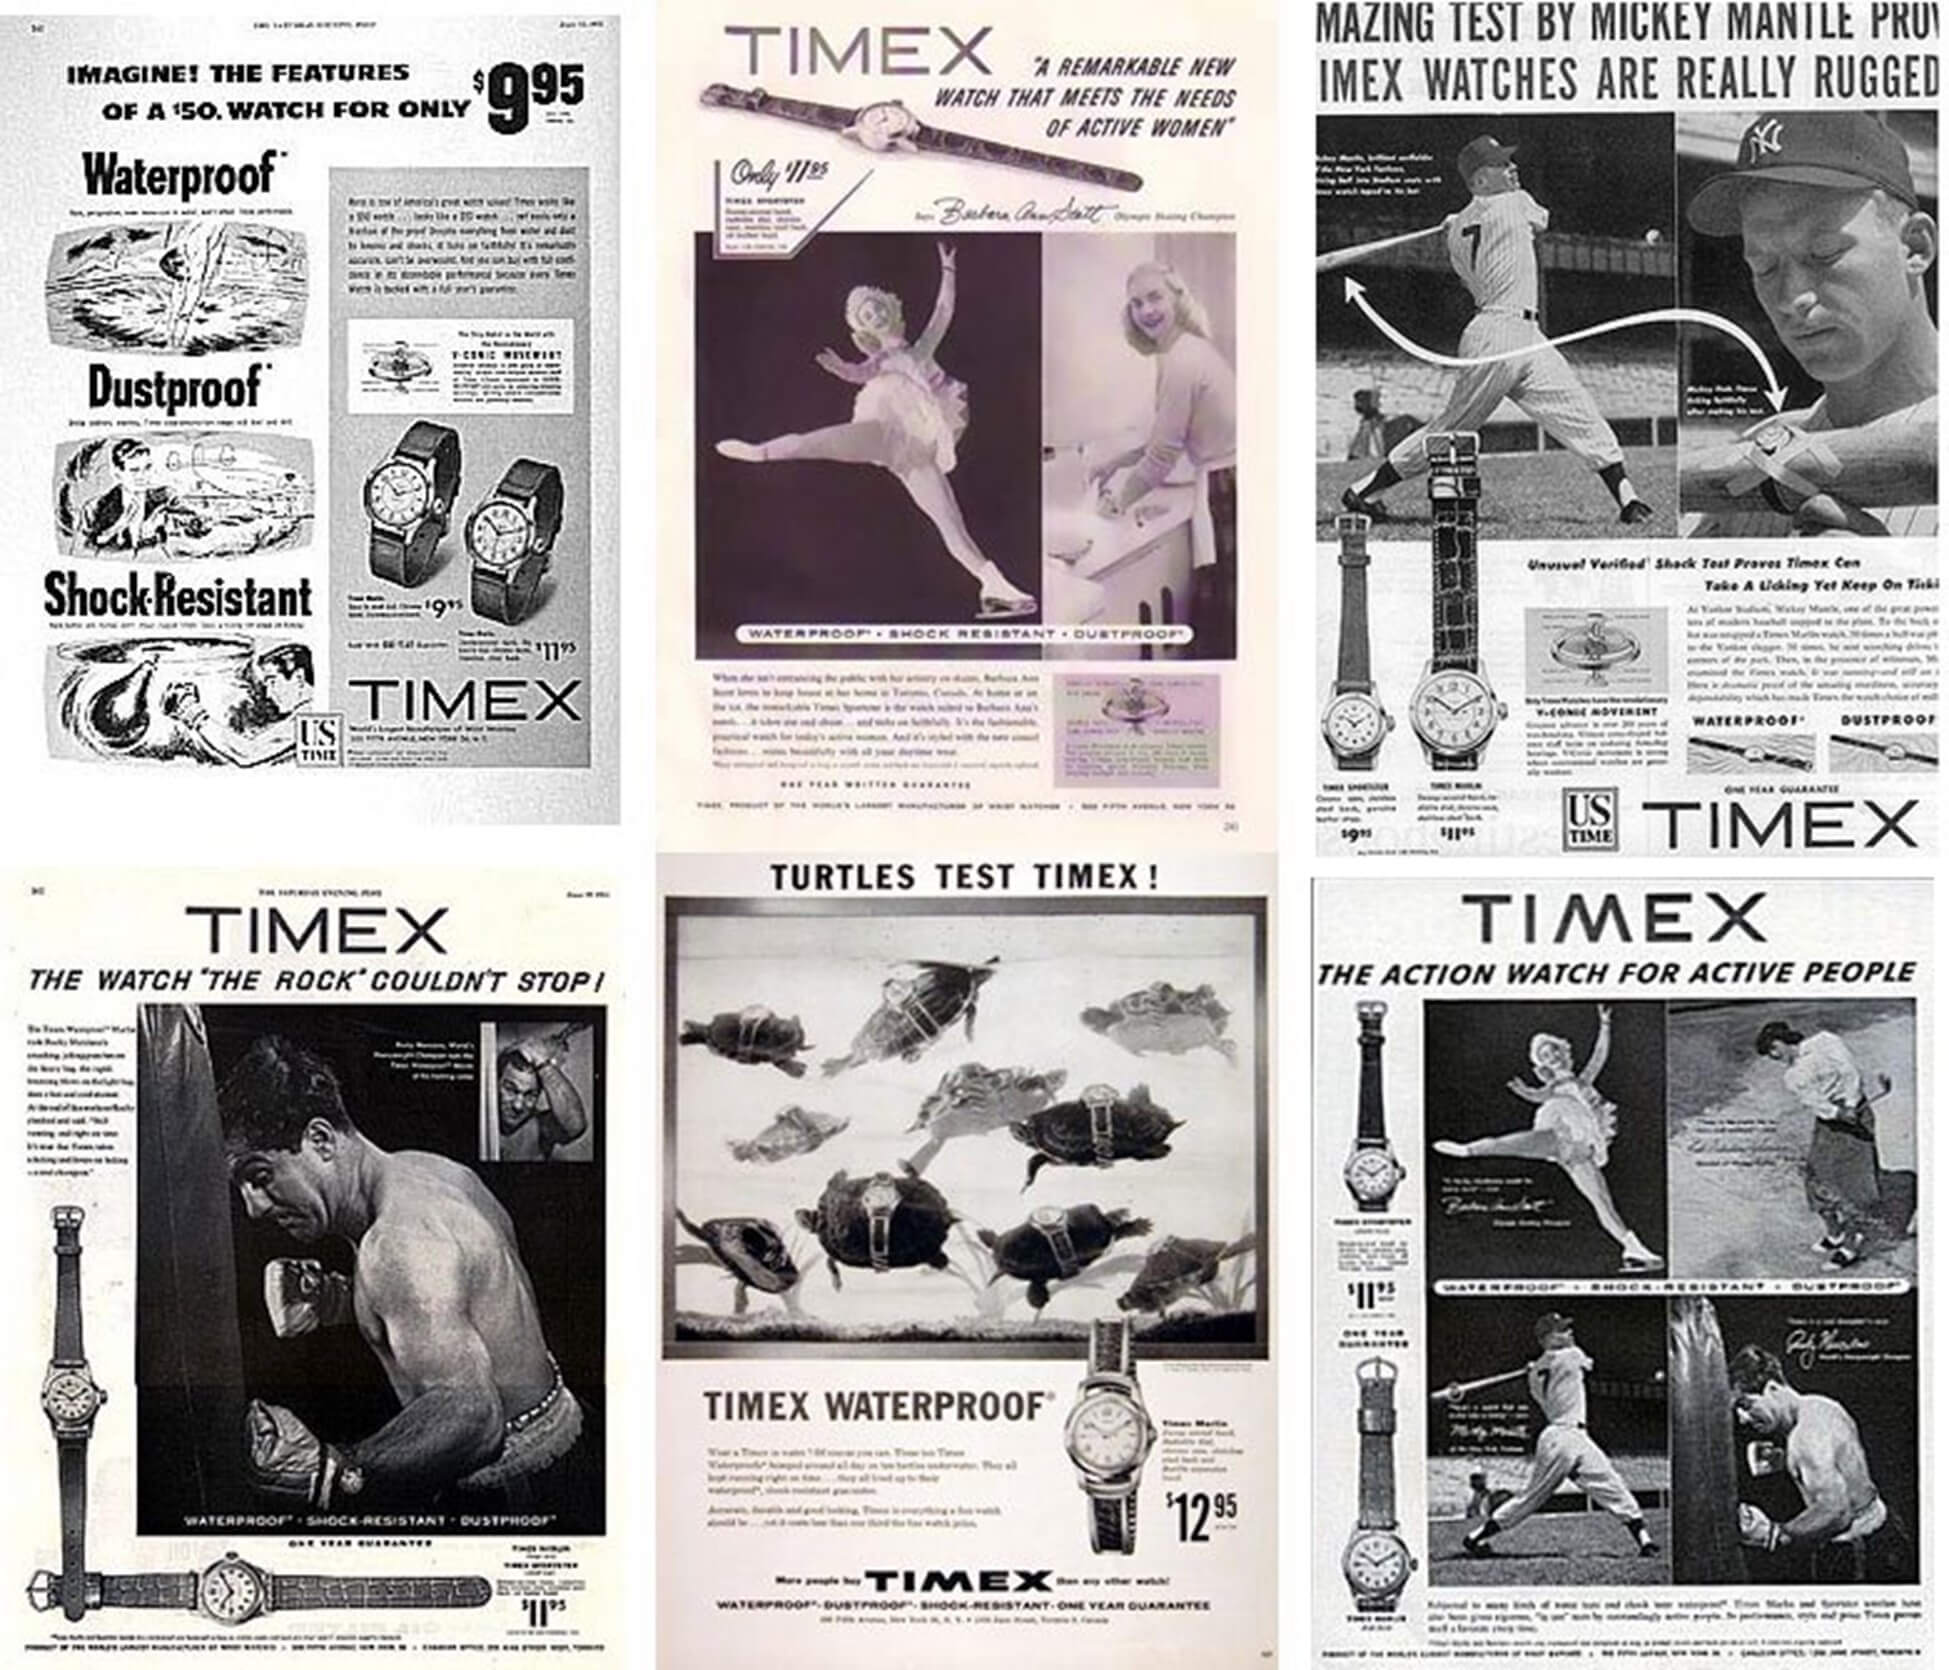 Реклама Timex наглядно показывала, что эти часы не боятся ни сильных ударов, ни подводного плавания